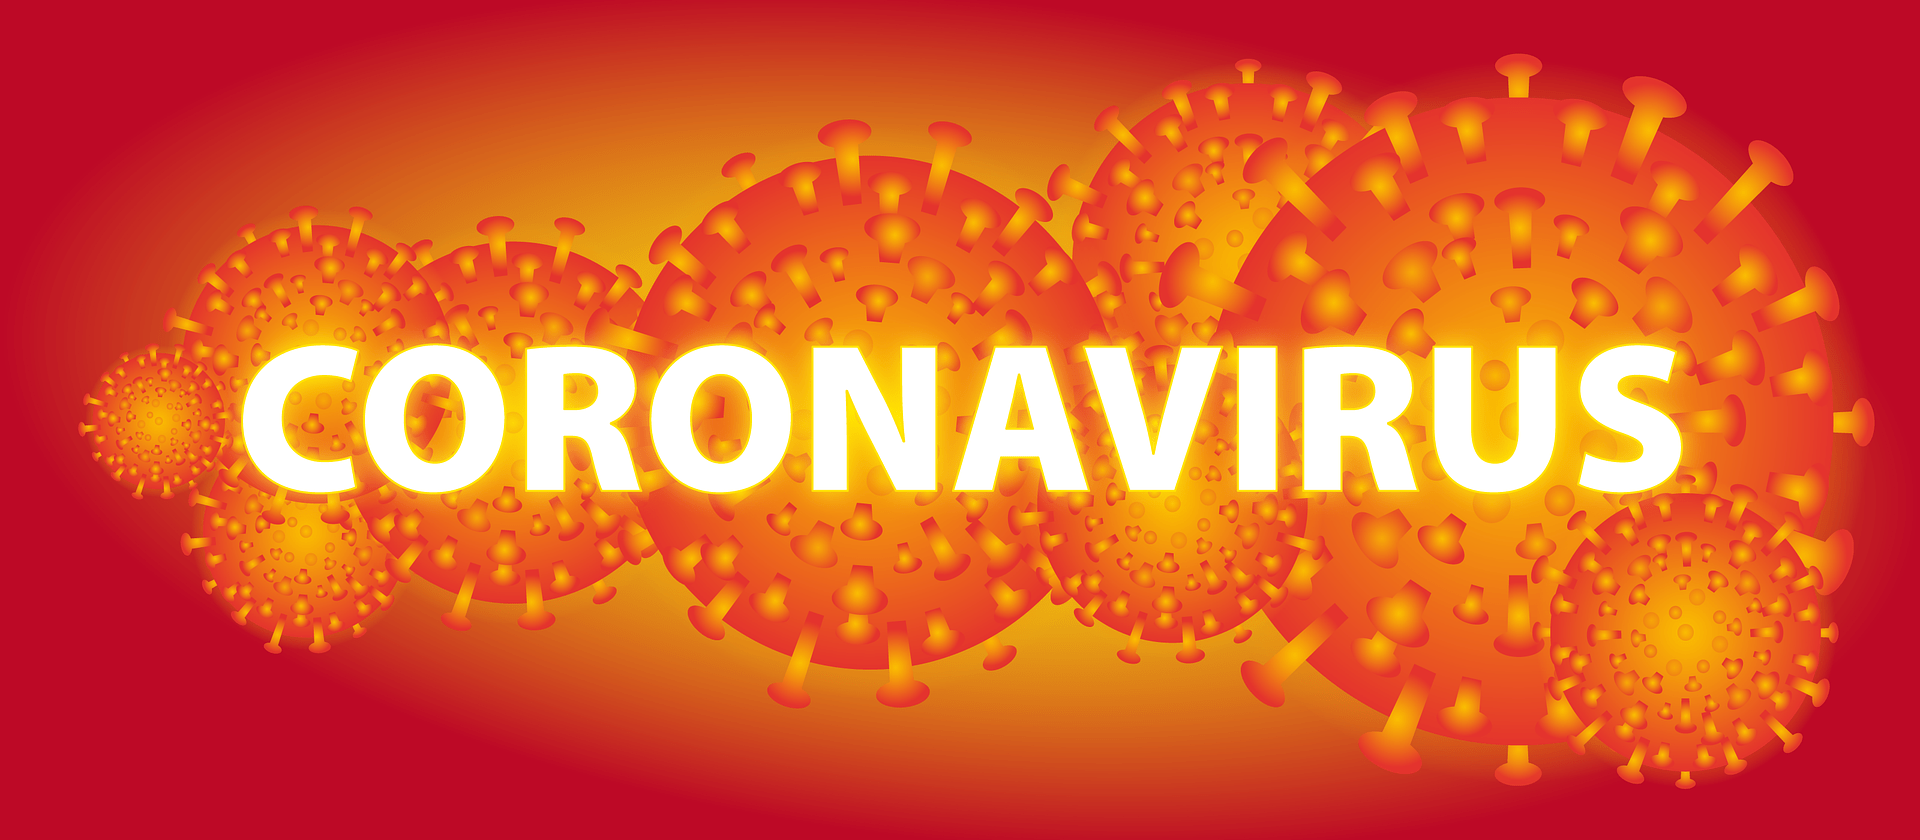 Aporpizza preparada para la prevención del Coronavirus!!